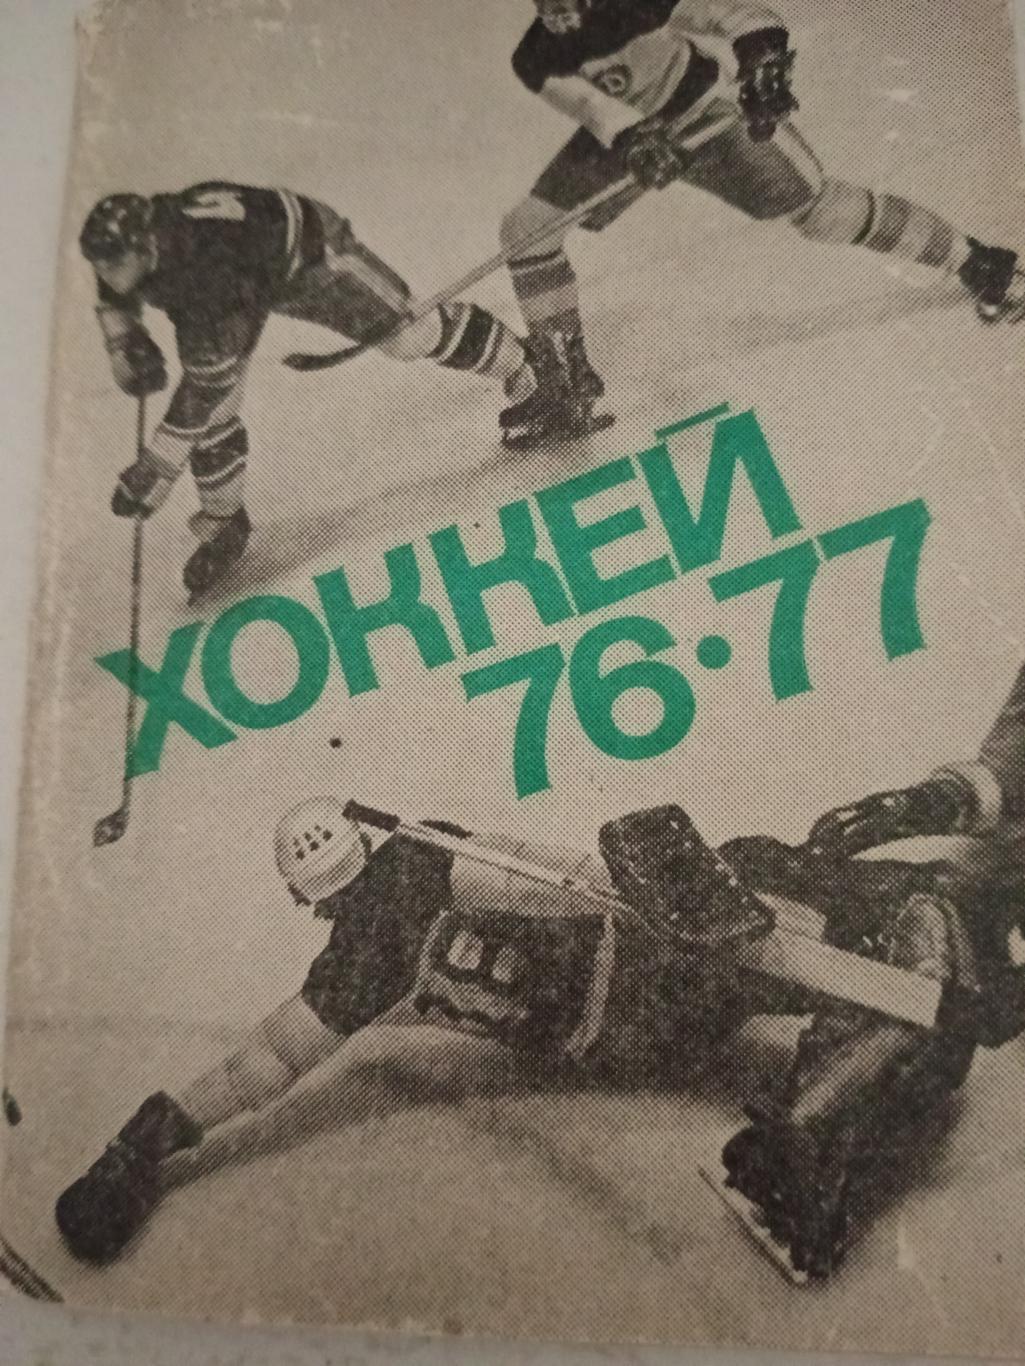 Хоккей. Московская правда. 1976/1977 гг.